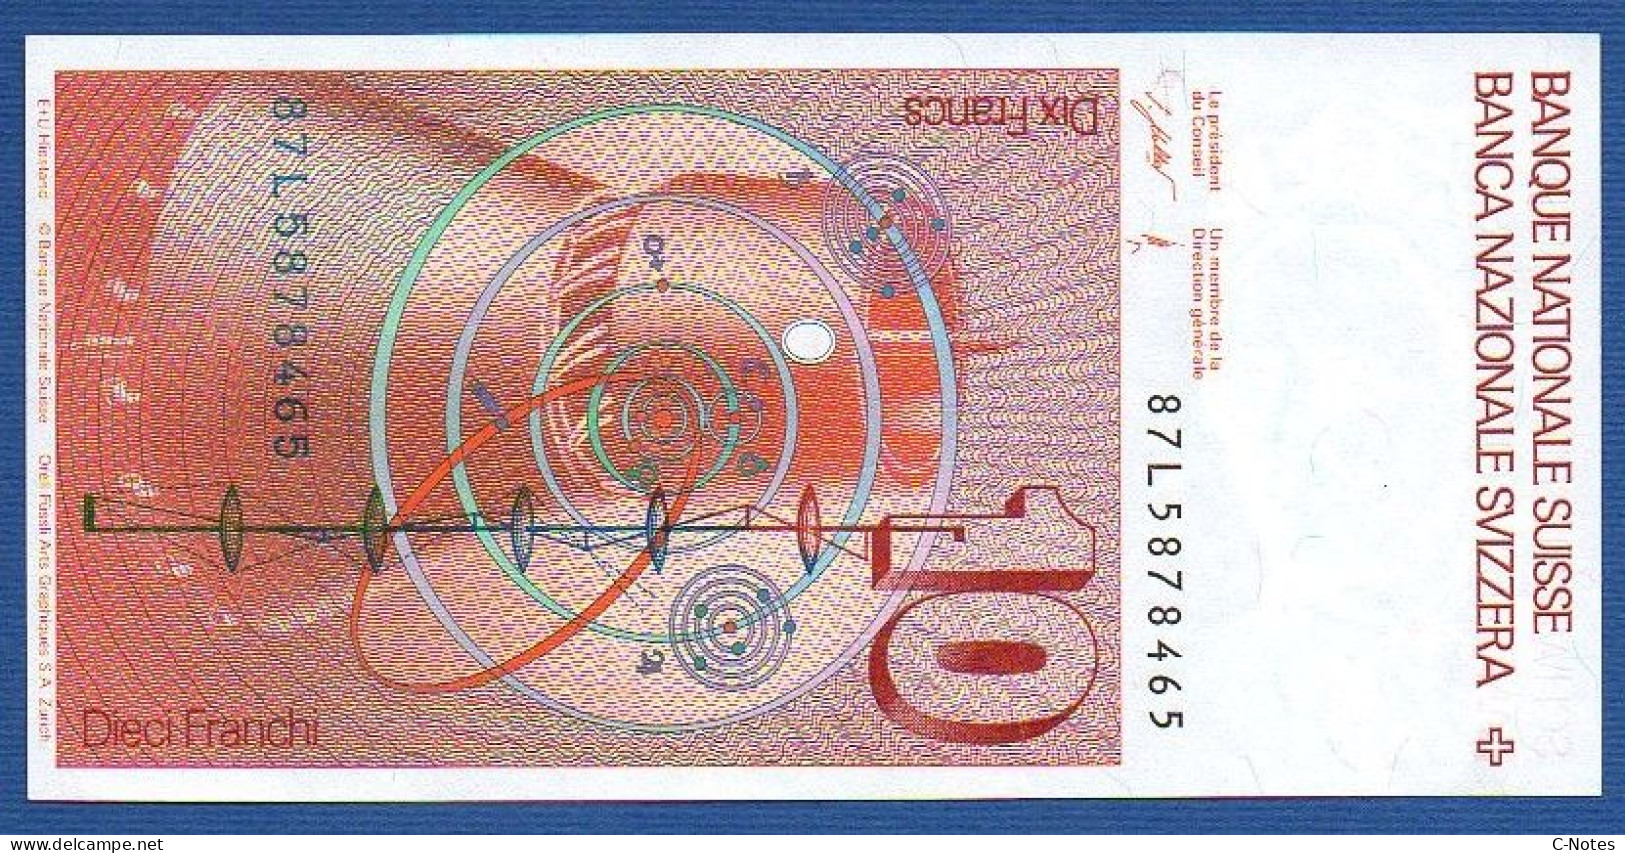 SWITZERLAND - P.53g(3) - 10 Francs 1987 UNC, Serie 87L5878465   -signatures: F. Schaller & Meyer - Schweiz